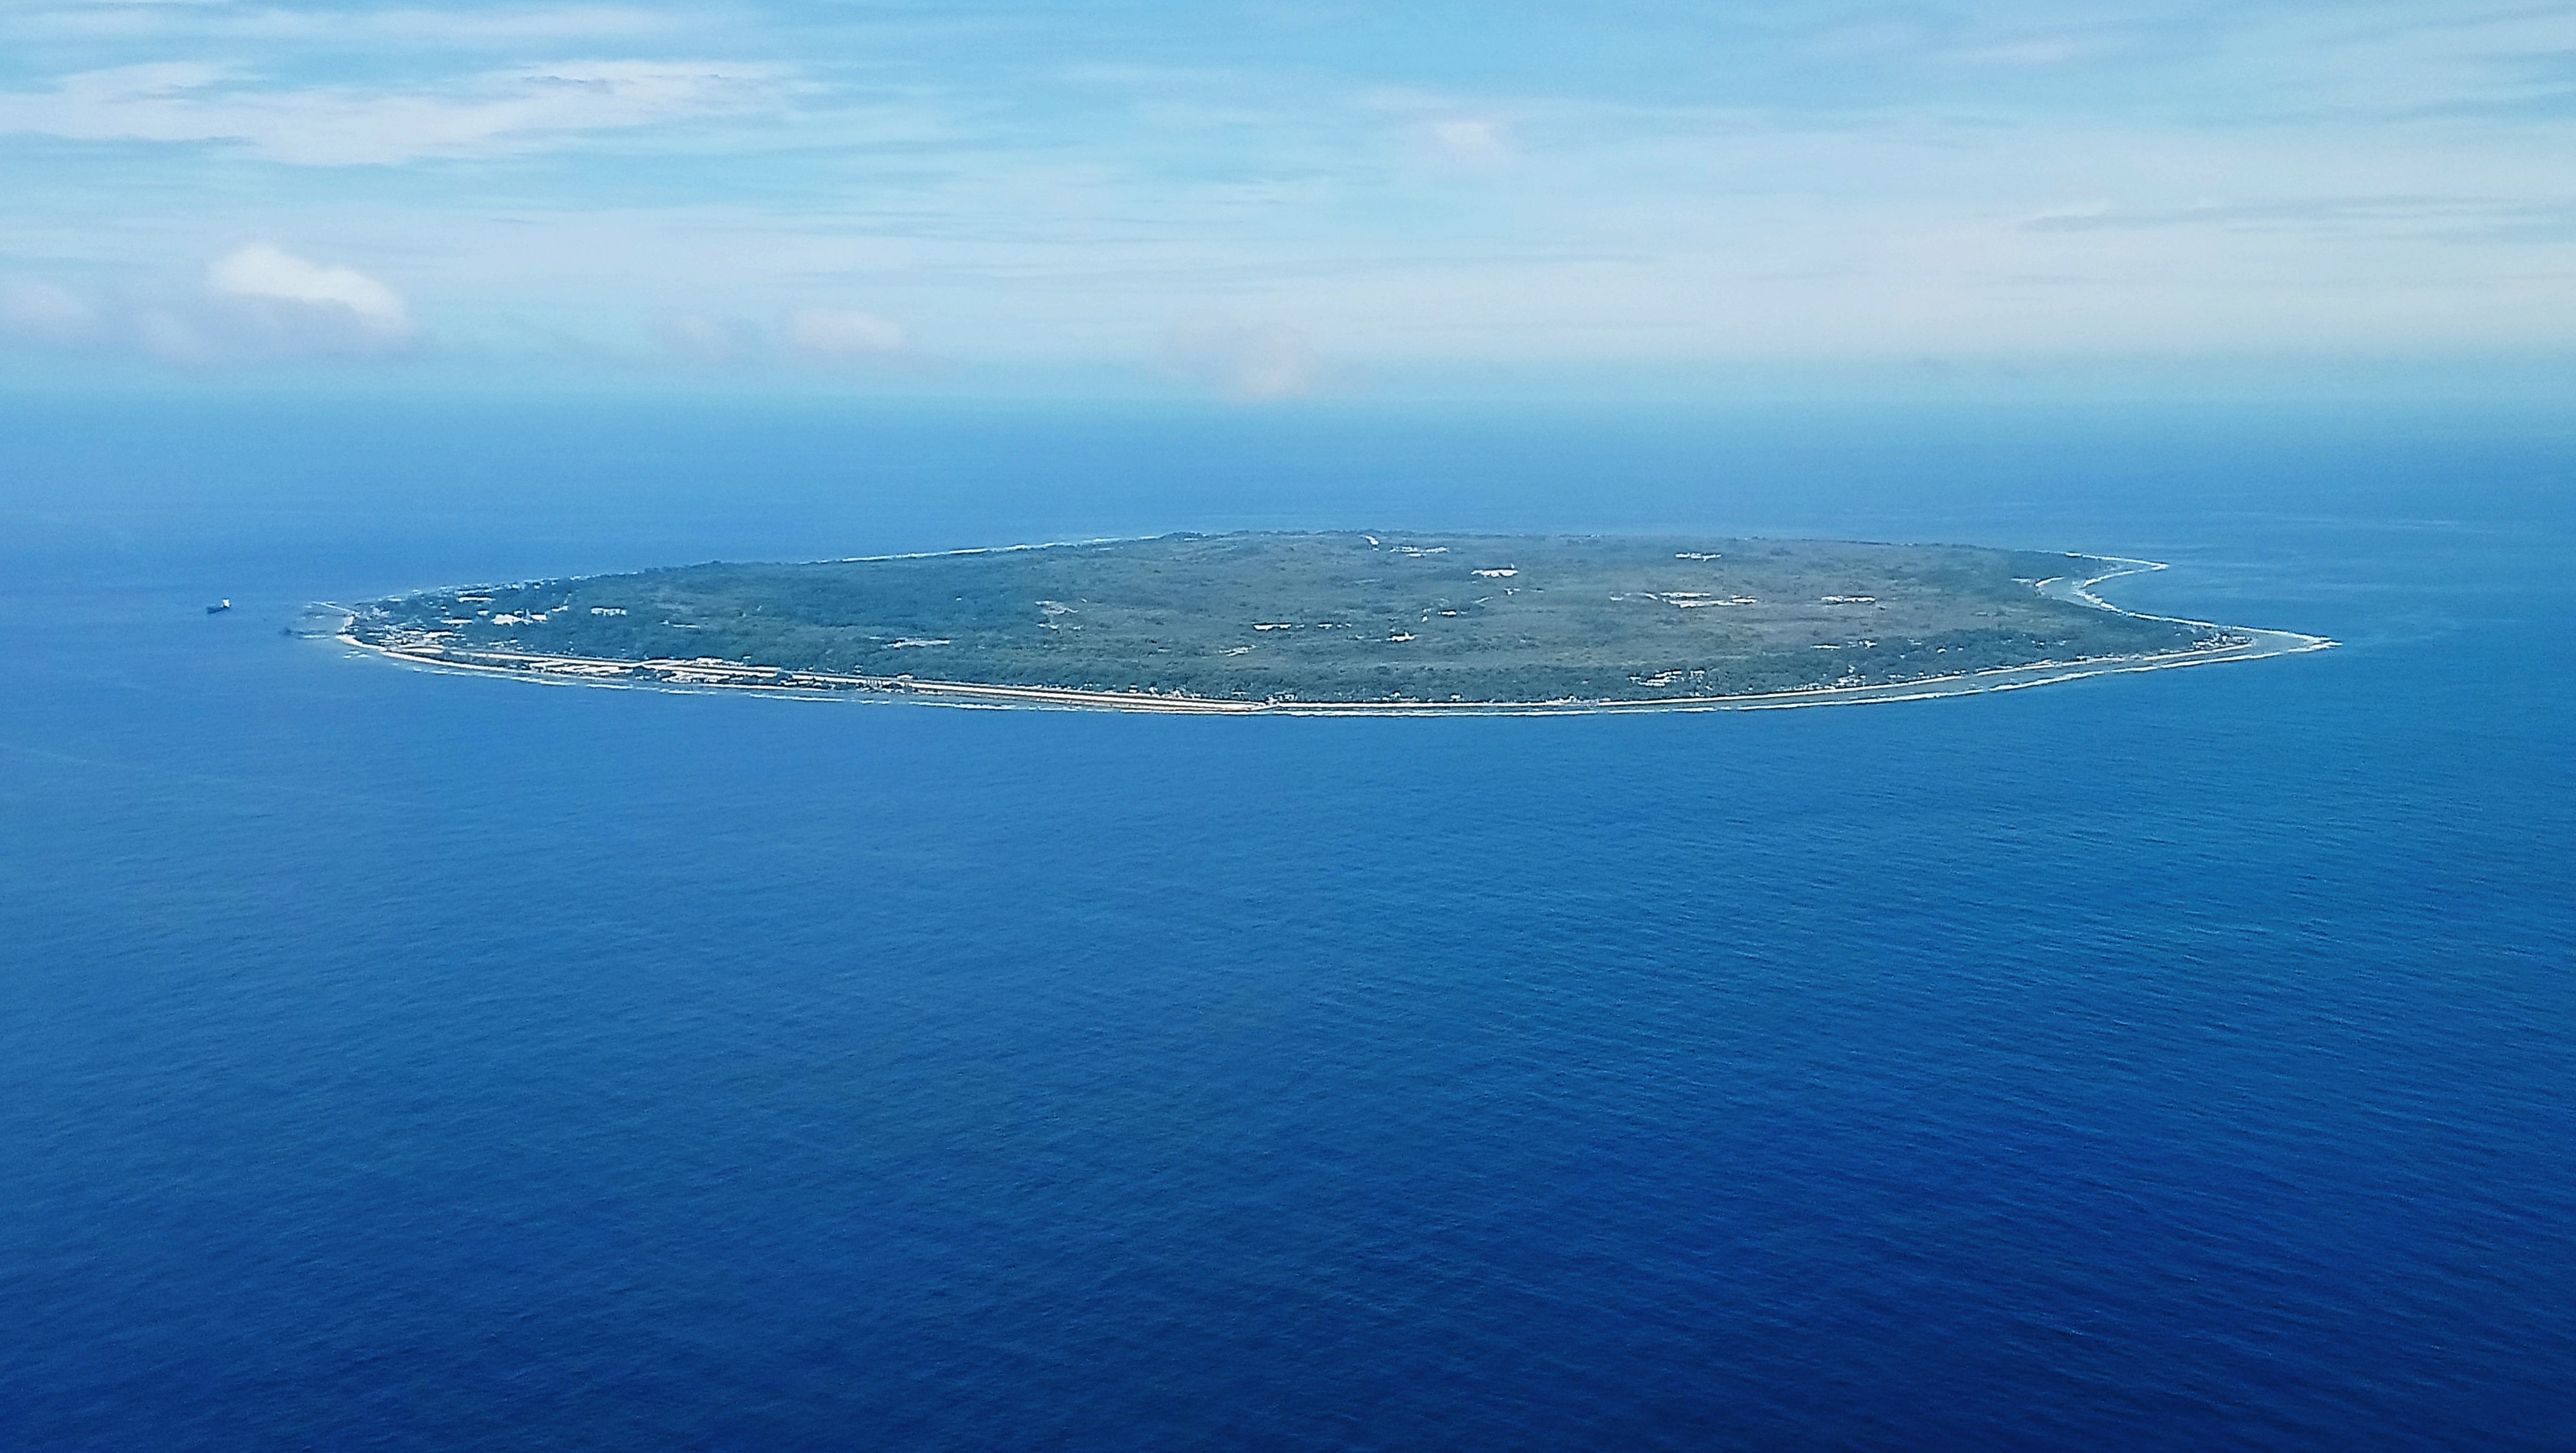 País por país - Nauru - Información de interés